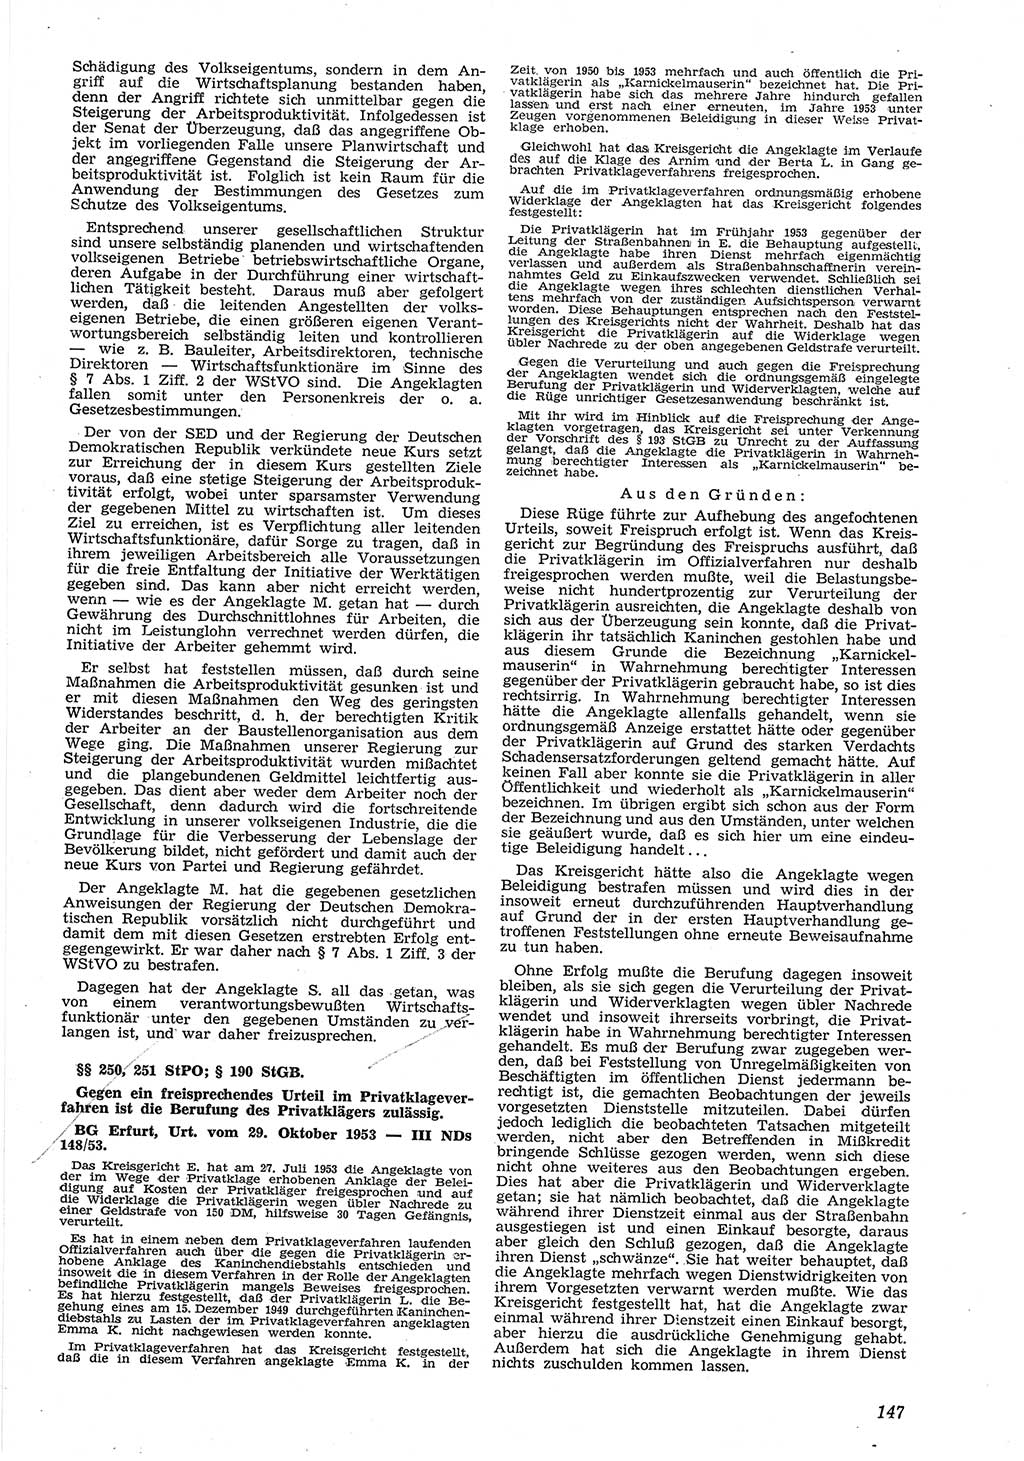 Neue Justiz (NJ), Zeitschrift für Recht und Rechtswissenschaft [Deutsche Demokratische Republik (DDR)], 8. Jahrgang 1954, Seite 147 (NJ DDR 1954, S. 147)